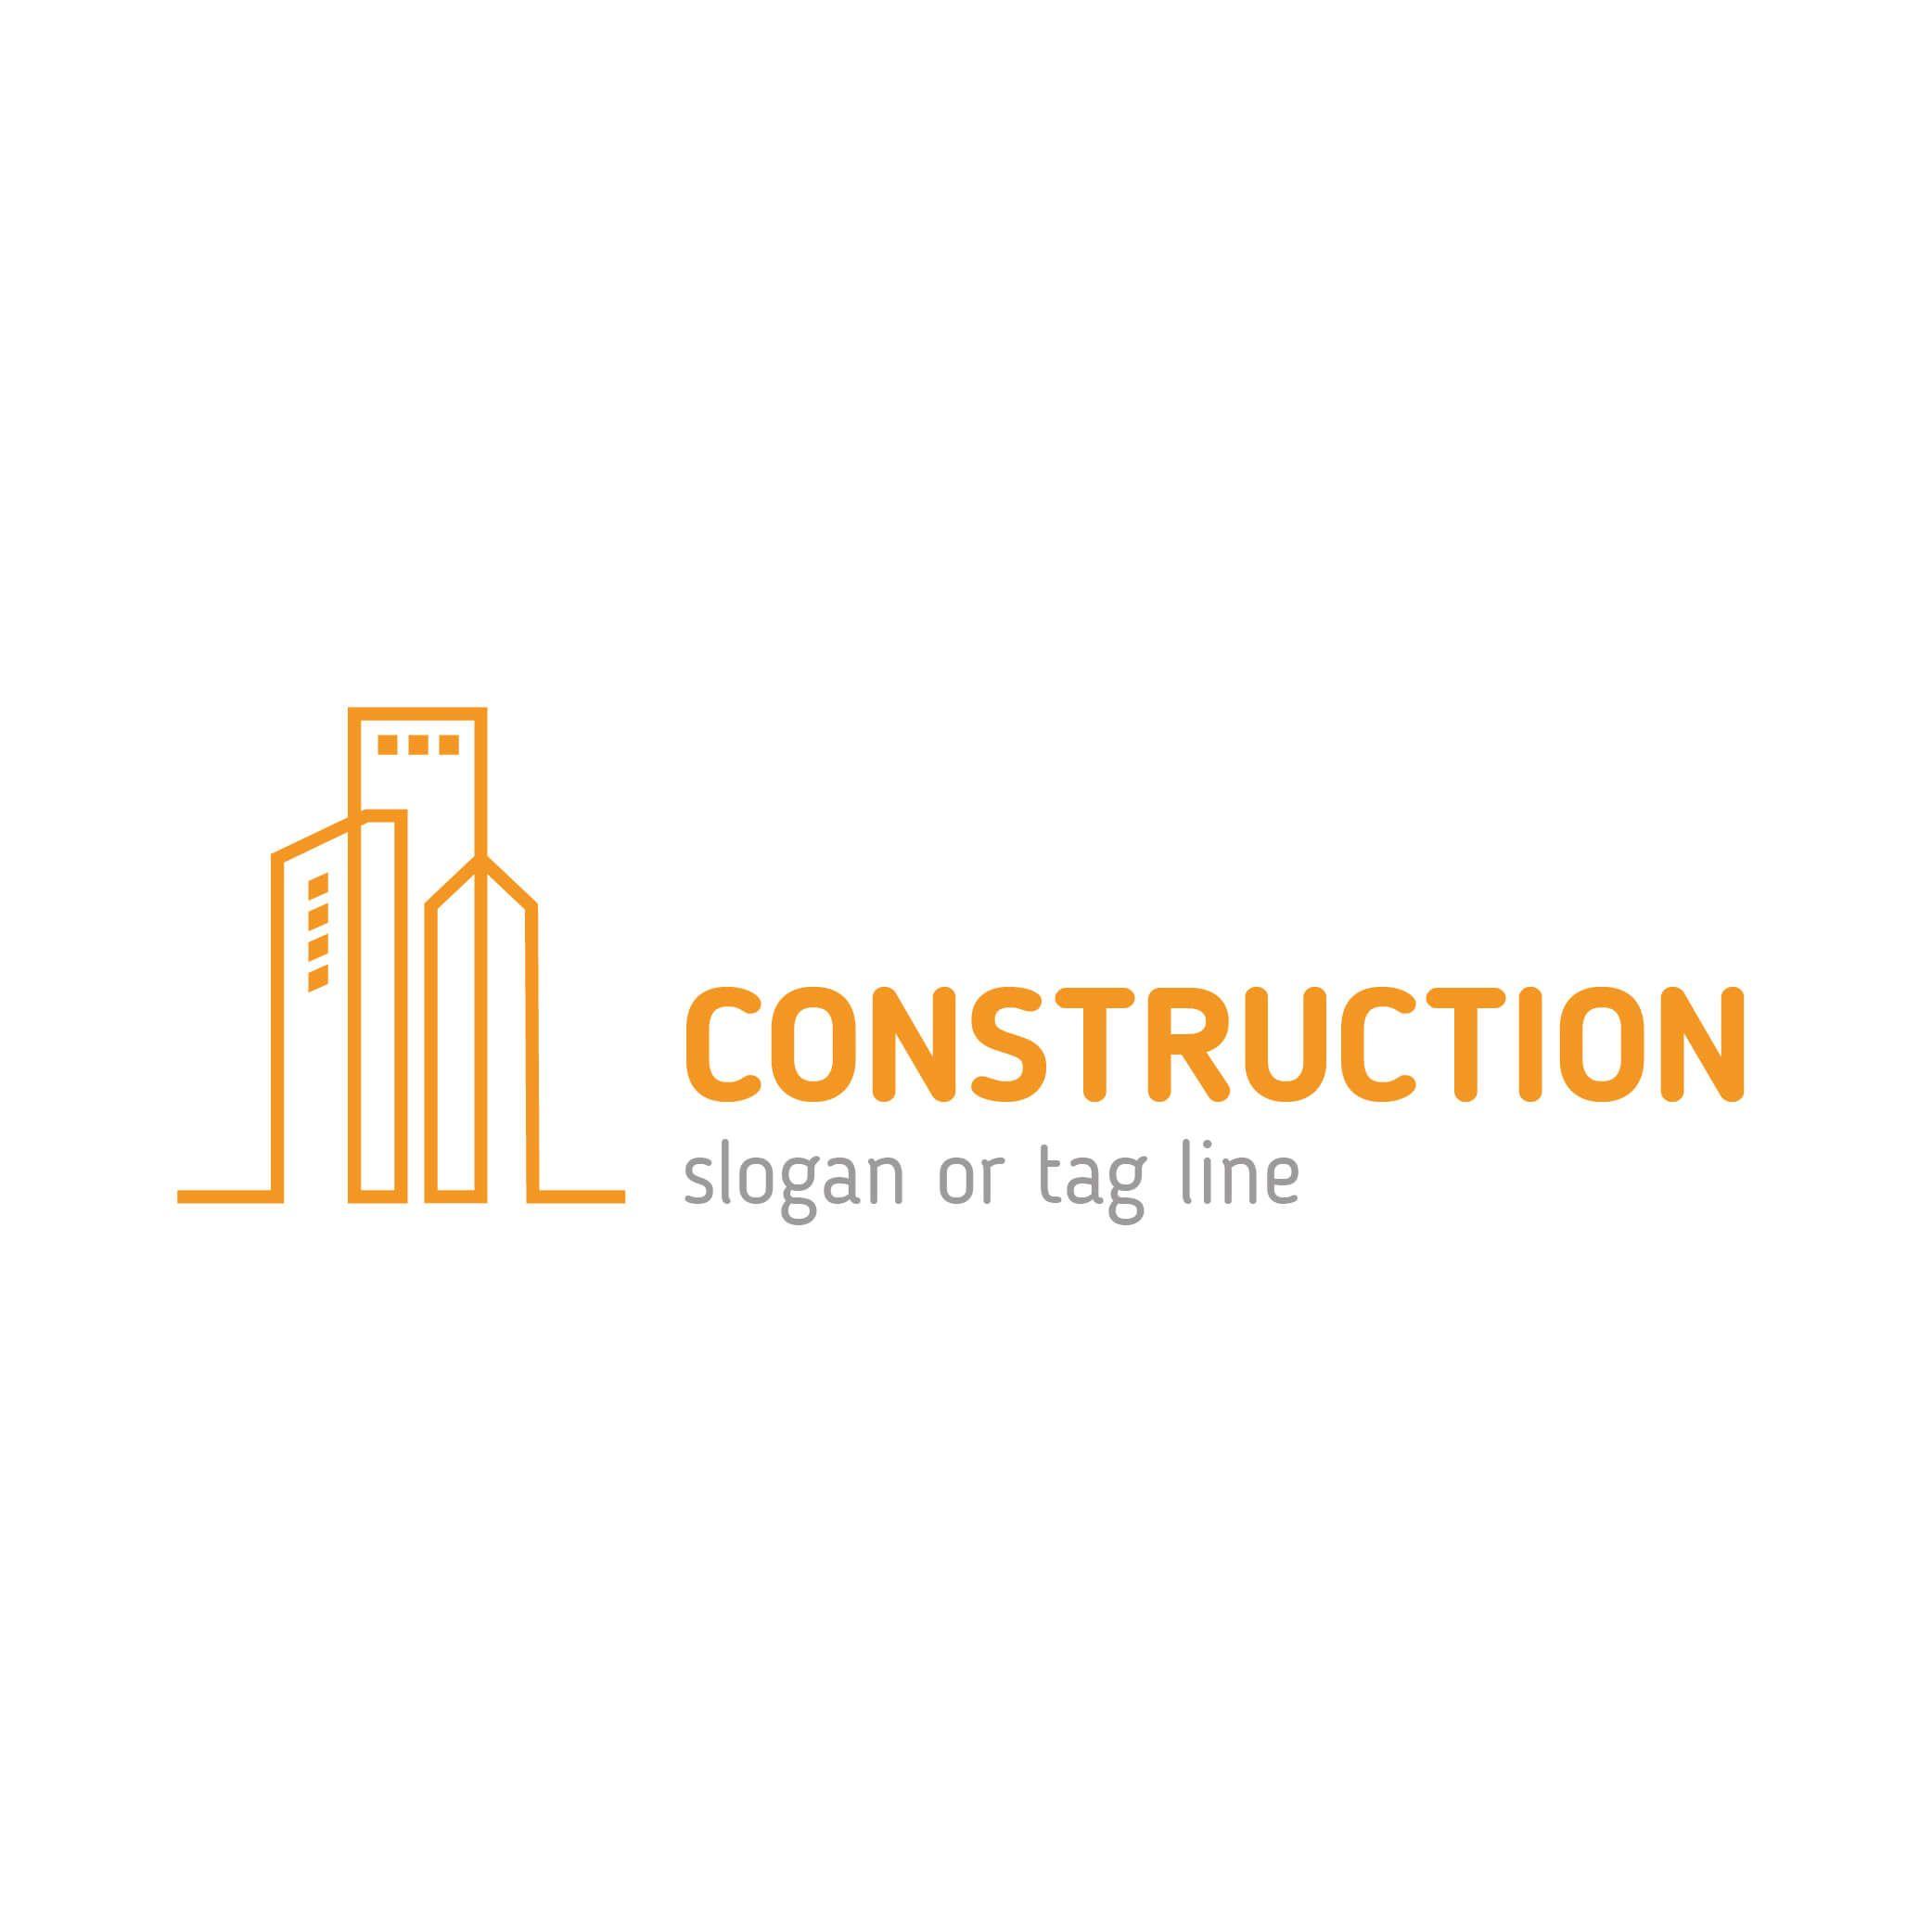 Contruction Logo - Construction Real Estate company logo templates Vector